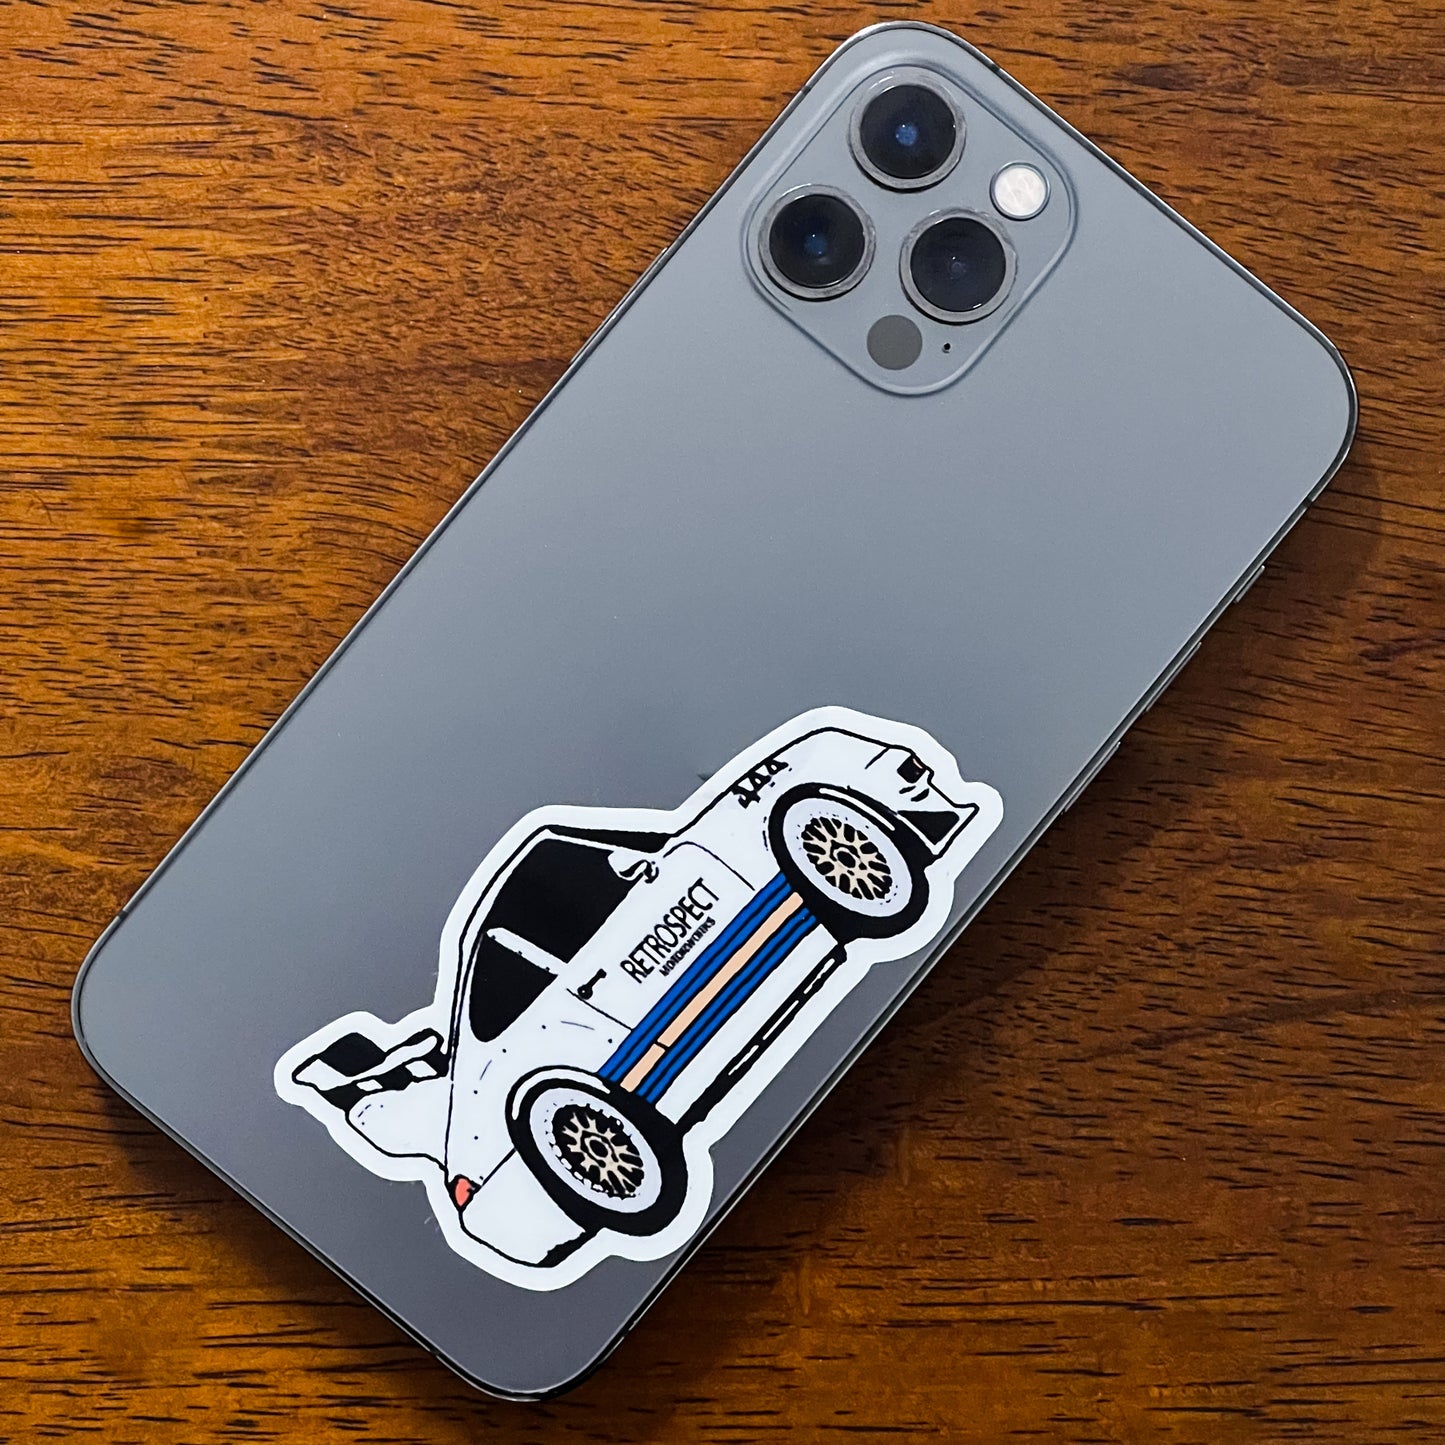 Porsche GT2 Evo Race Car Sticker